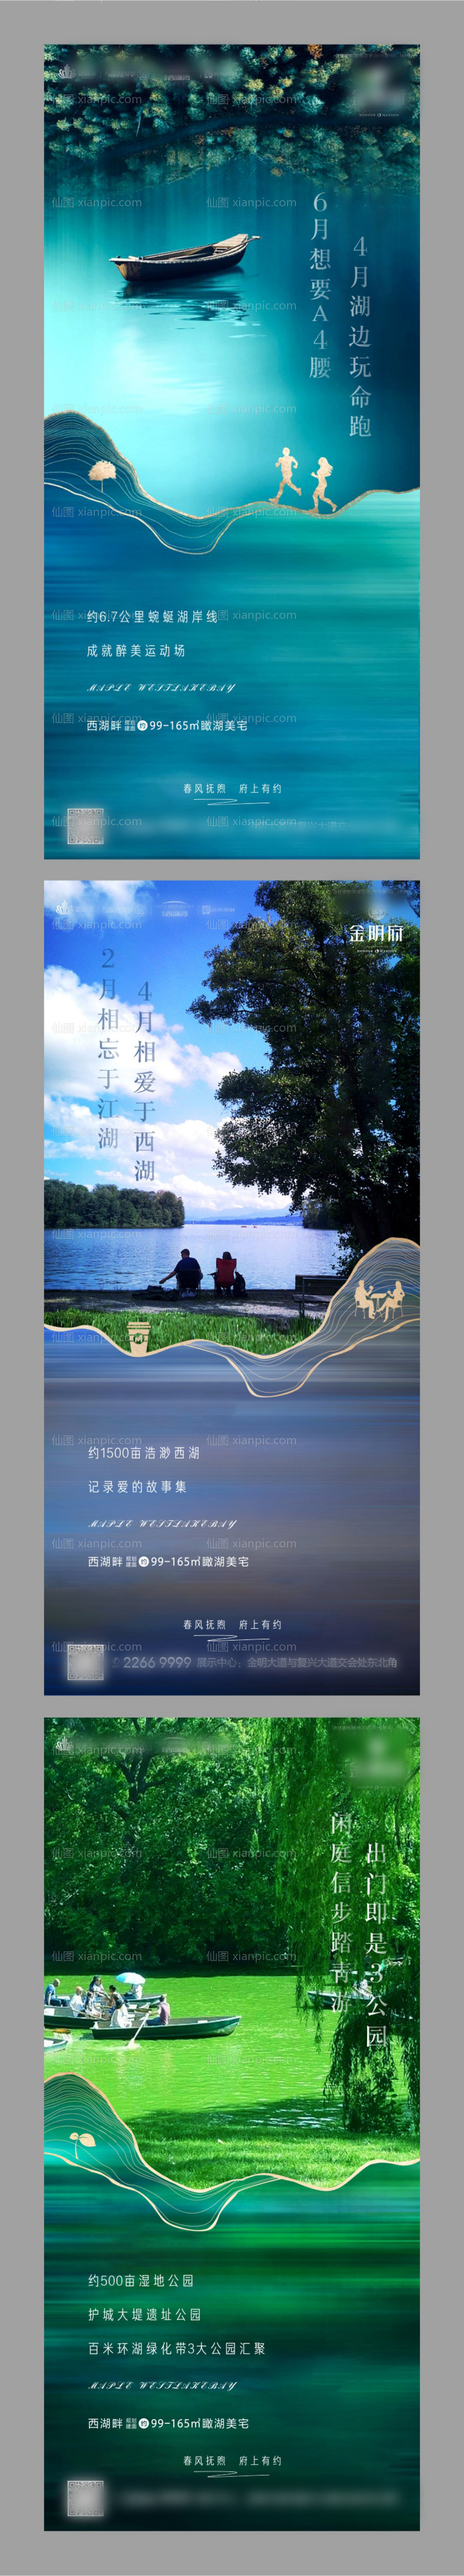 素材乐-地产湖景系列海报